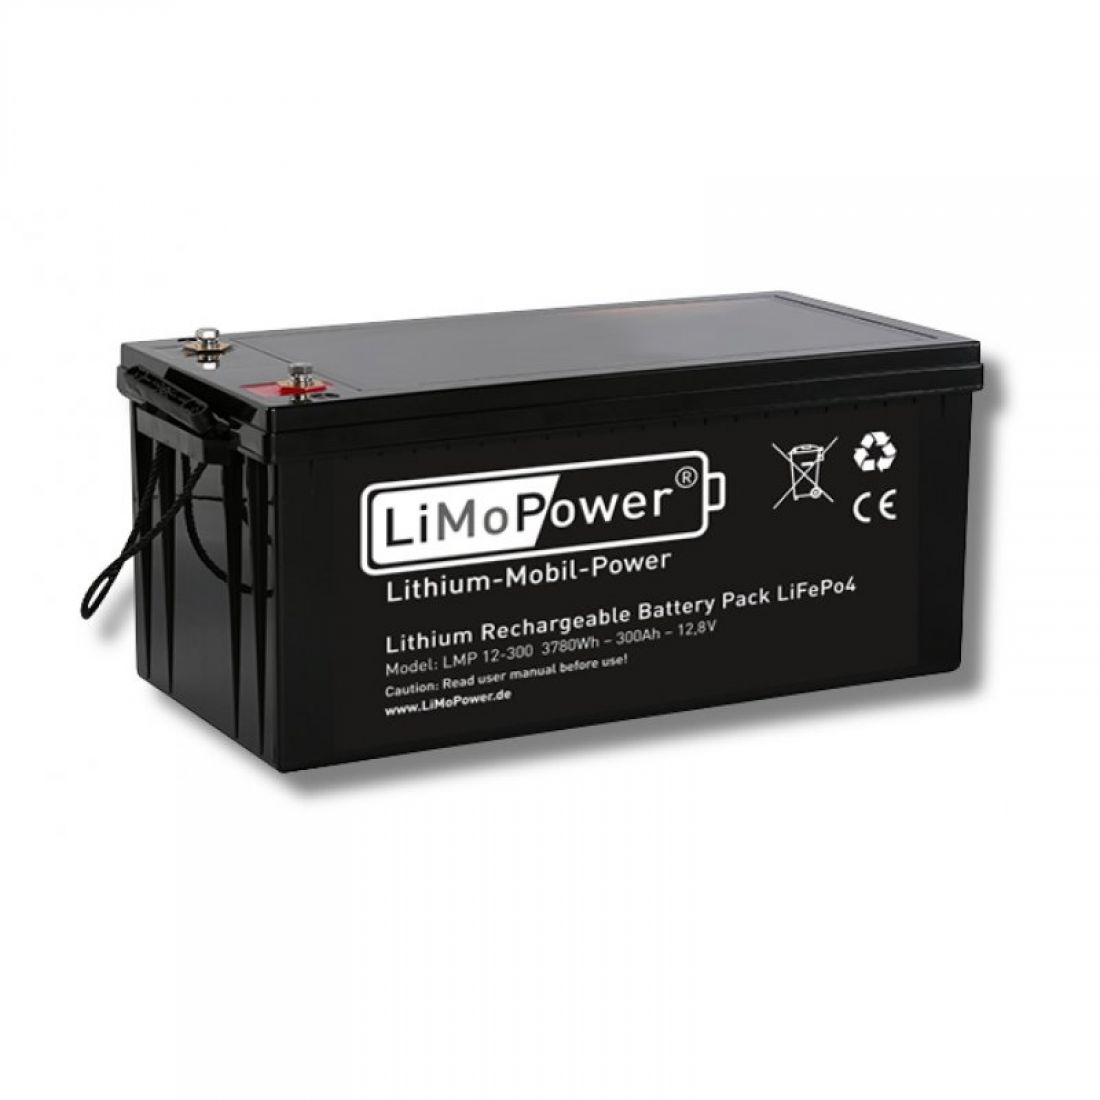 https://www.solar-qqq.de/images/product_images/popup_images/limopower-lithium-ionen-akku-300-ah_1152.jpg